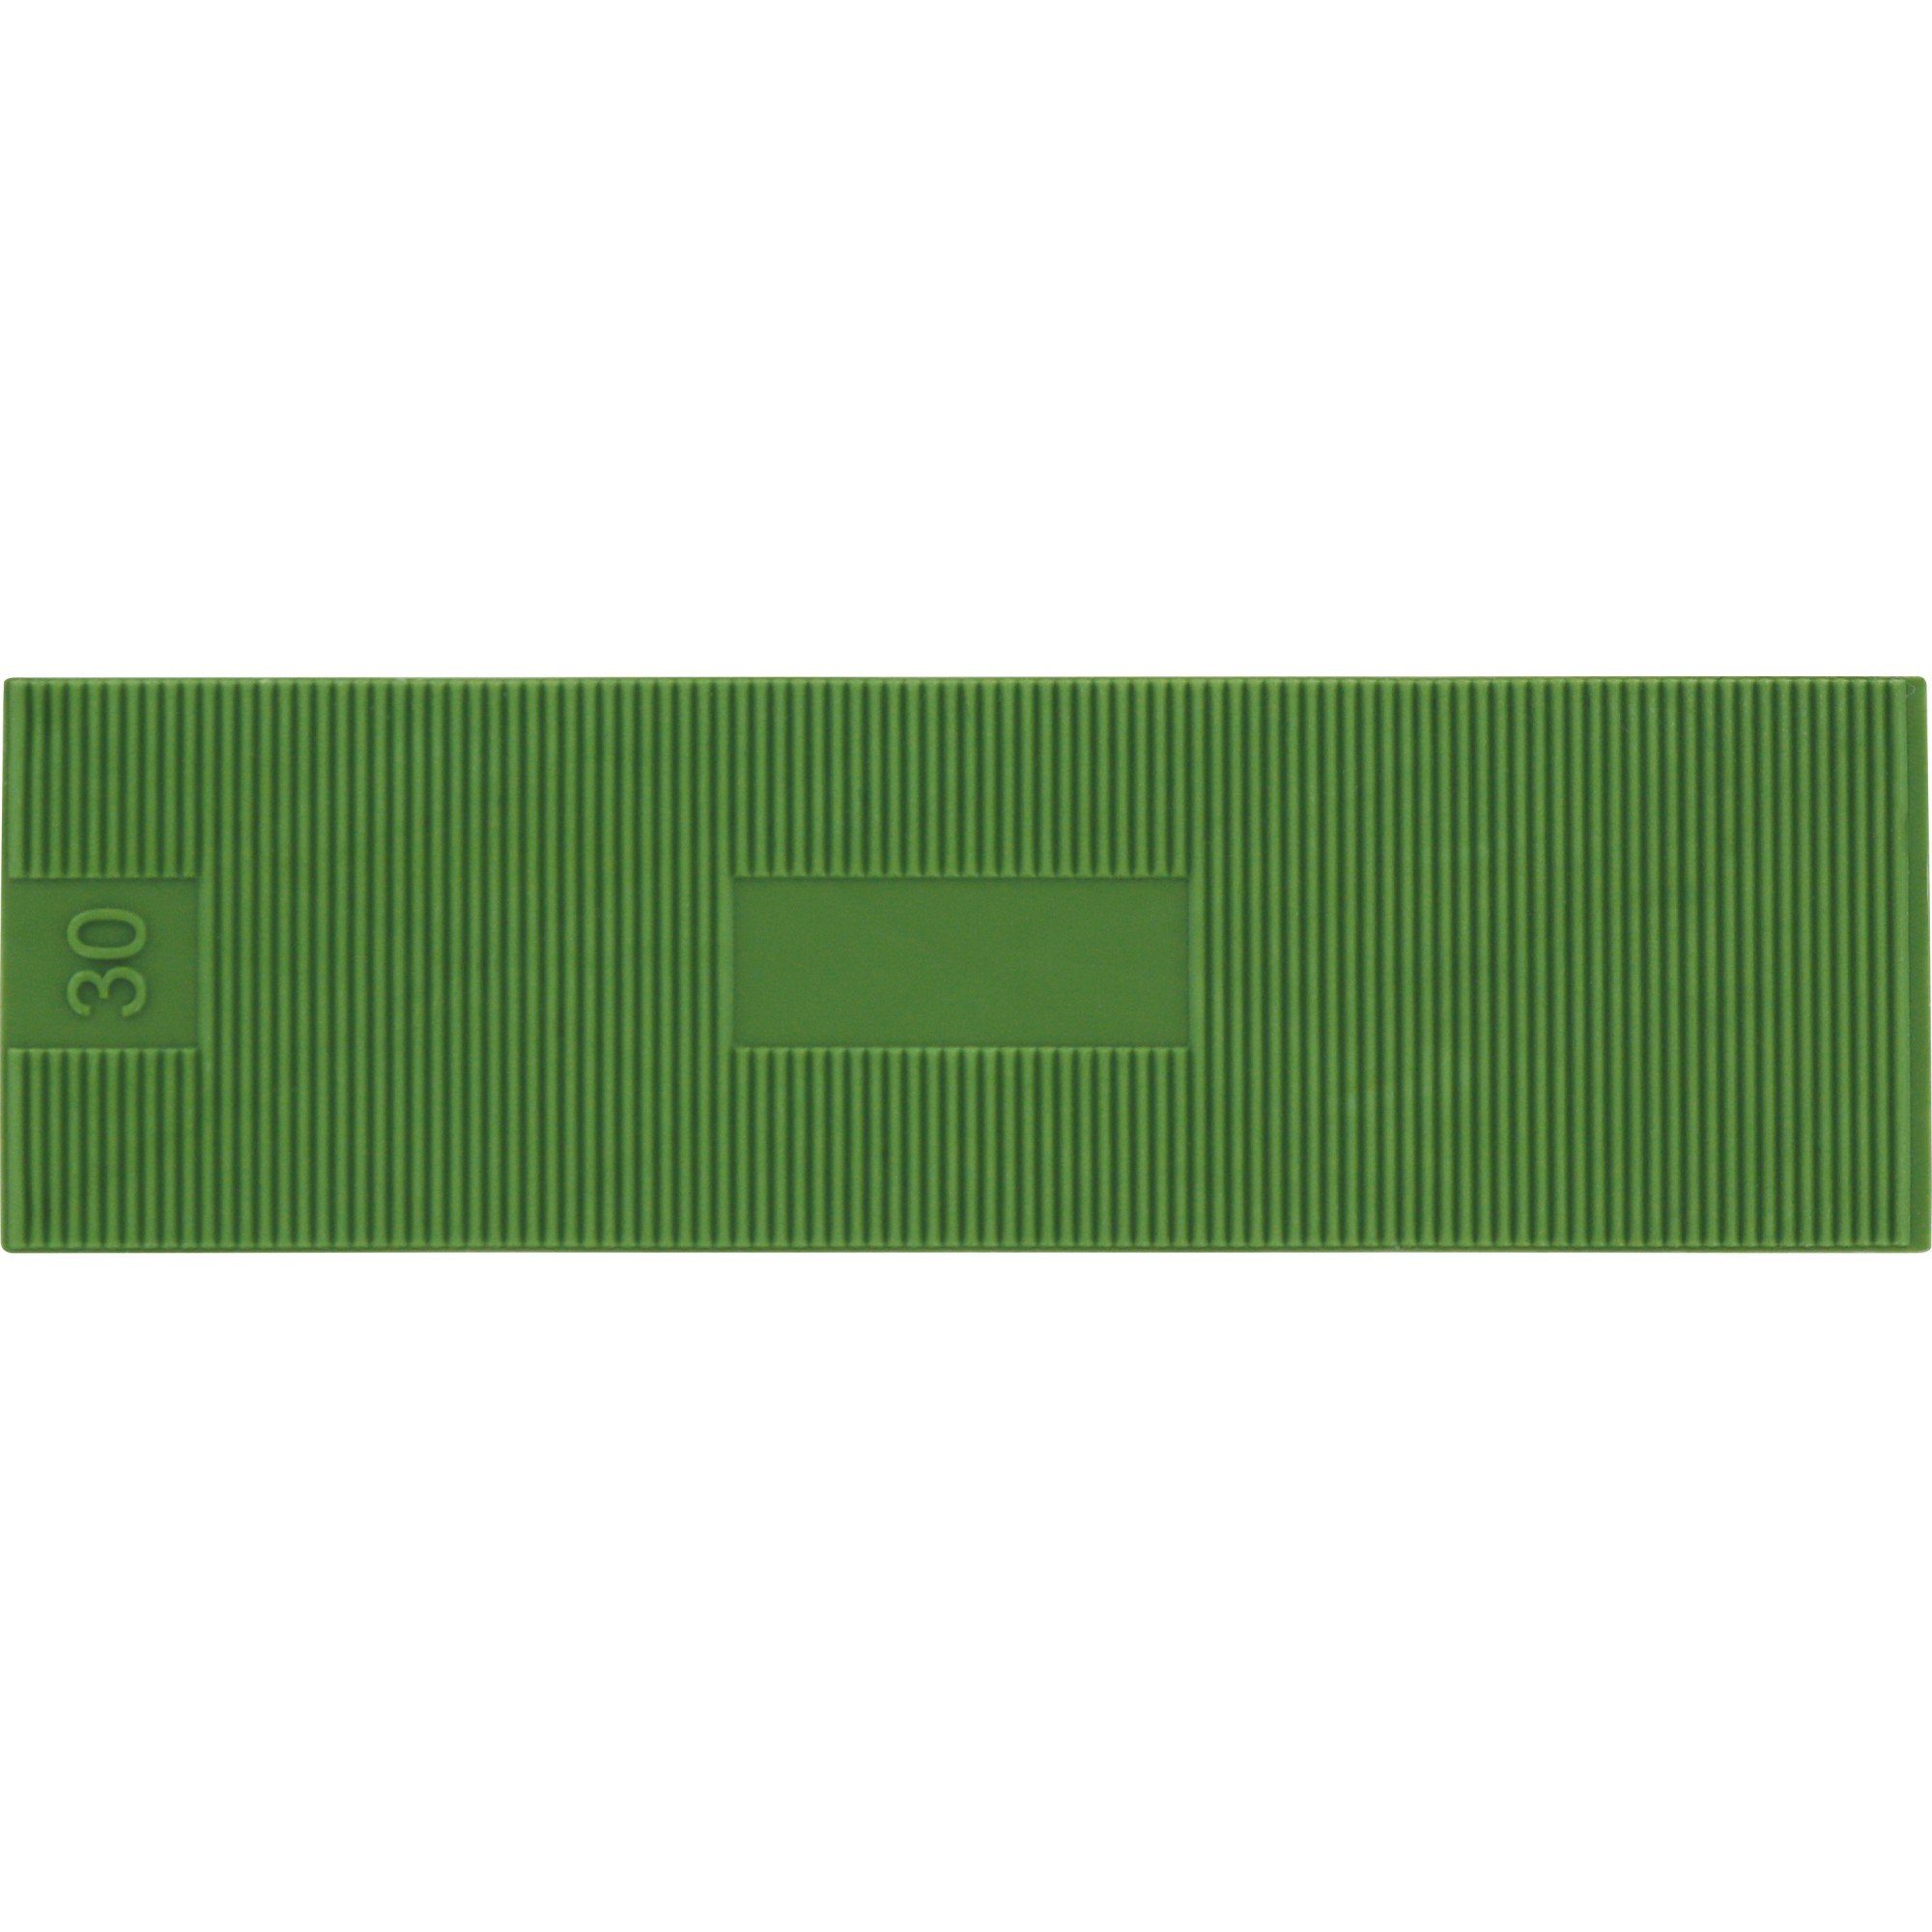 Triuso Verlegekeil PP Verglasungsklötze Montagekeile Unterlegplättchen 100 x 30mm grün, (30 Stück), hohe Tragfähigkeit - Druckfestigkeit 80 n/mm²